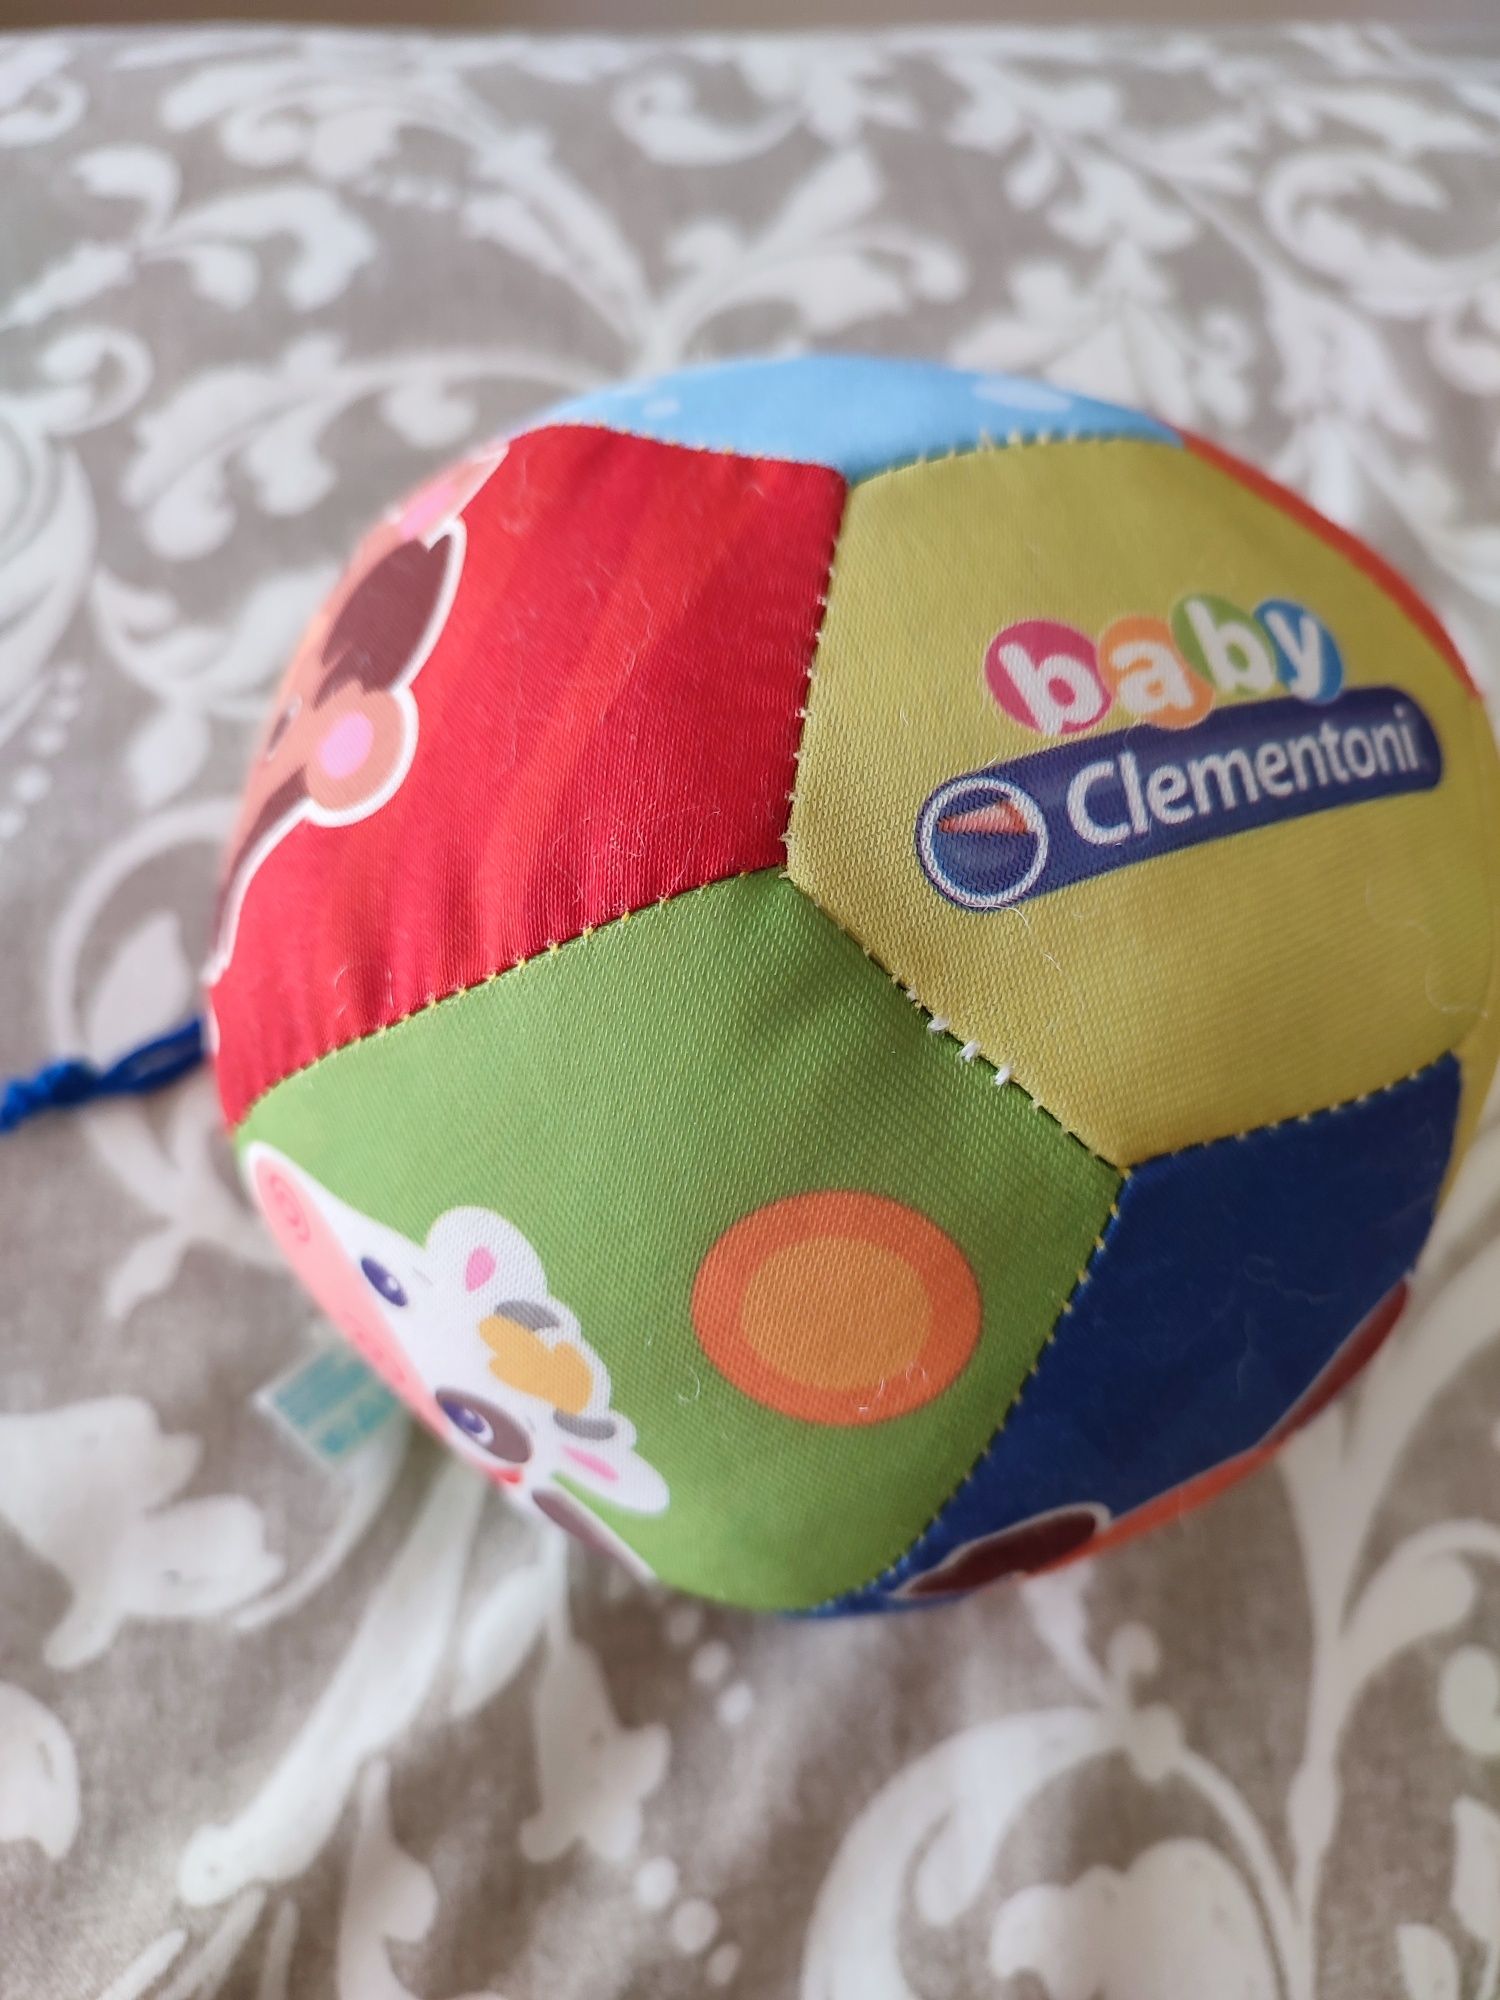 Bola de tecido com sons de animais da baby Clementoni